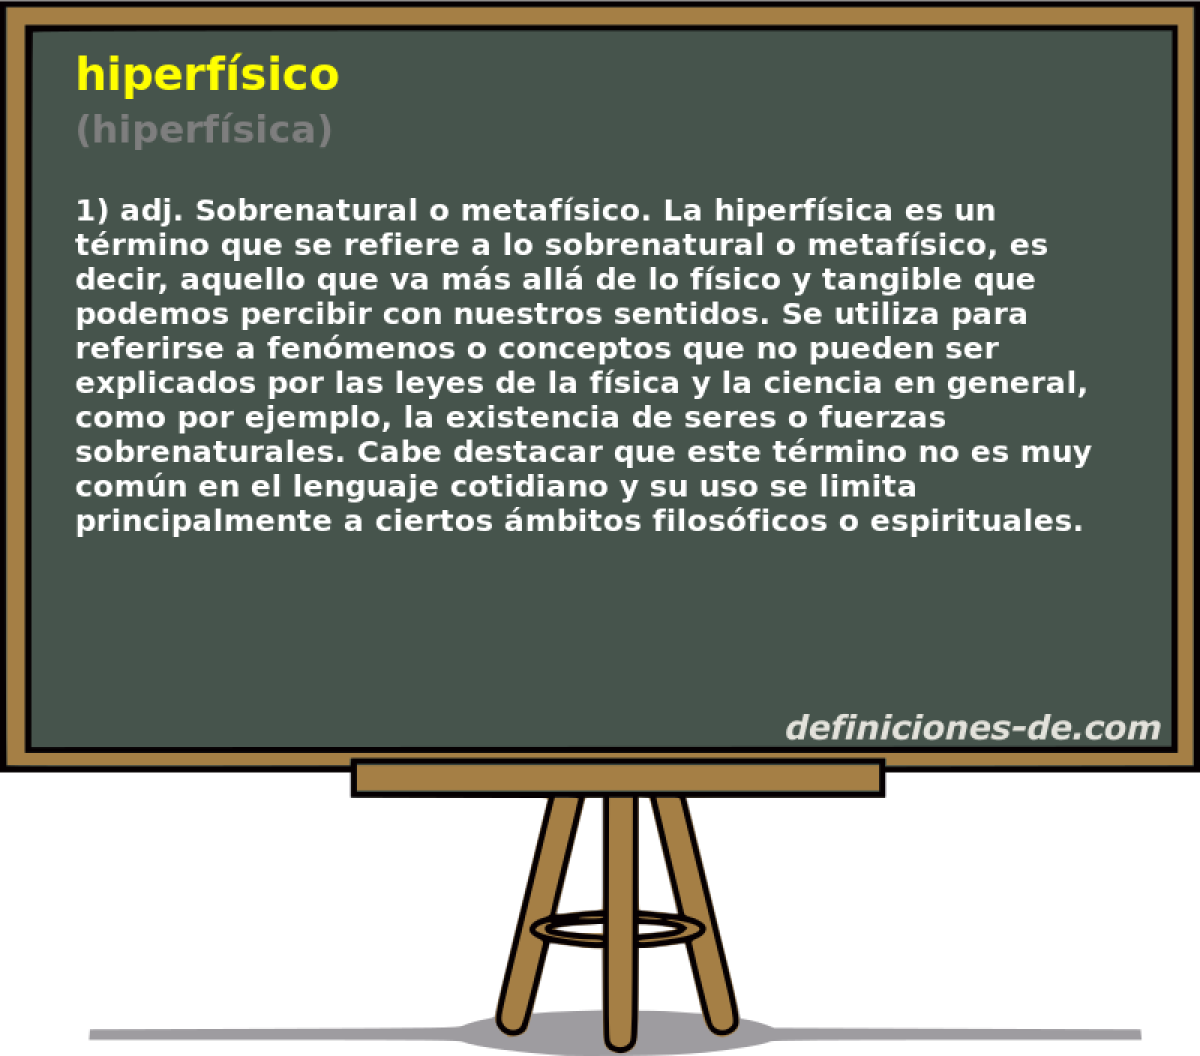 hiperfsico (hiperfsica)